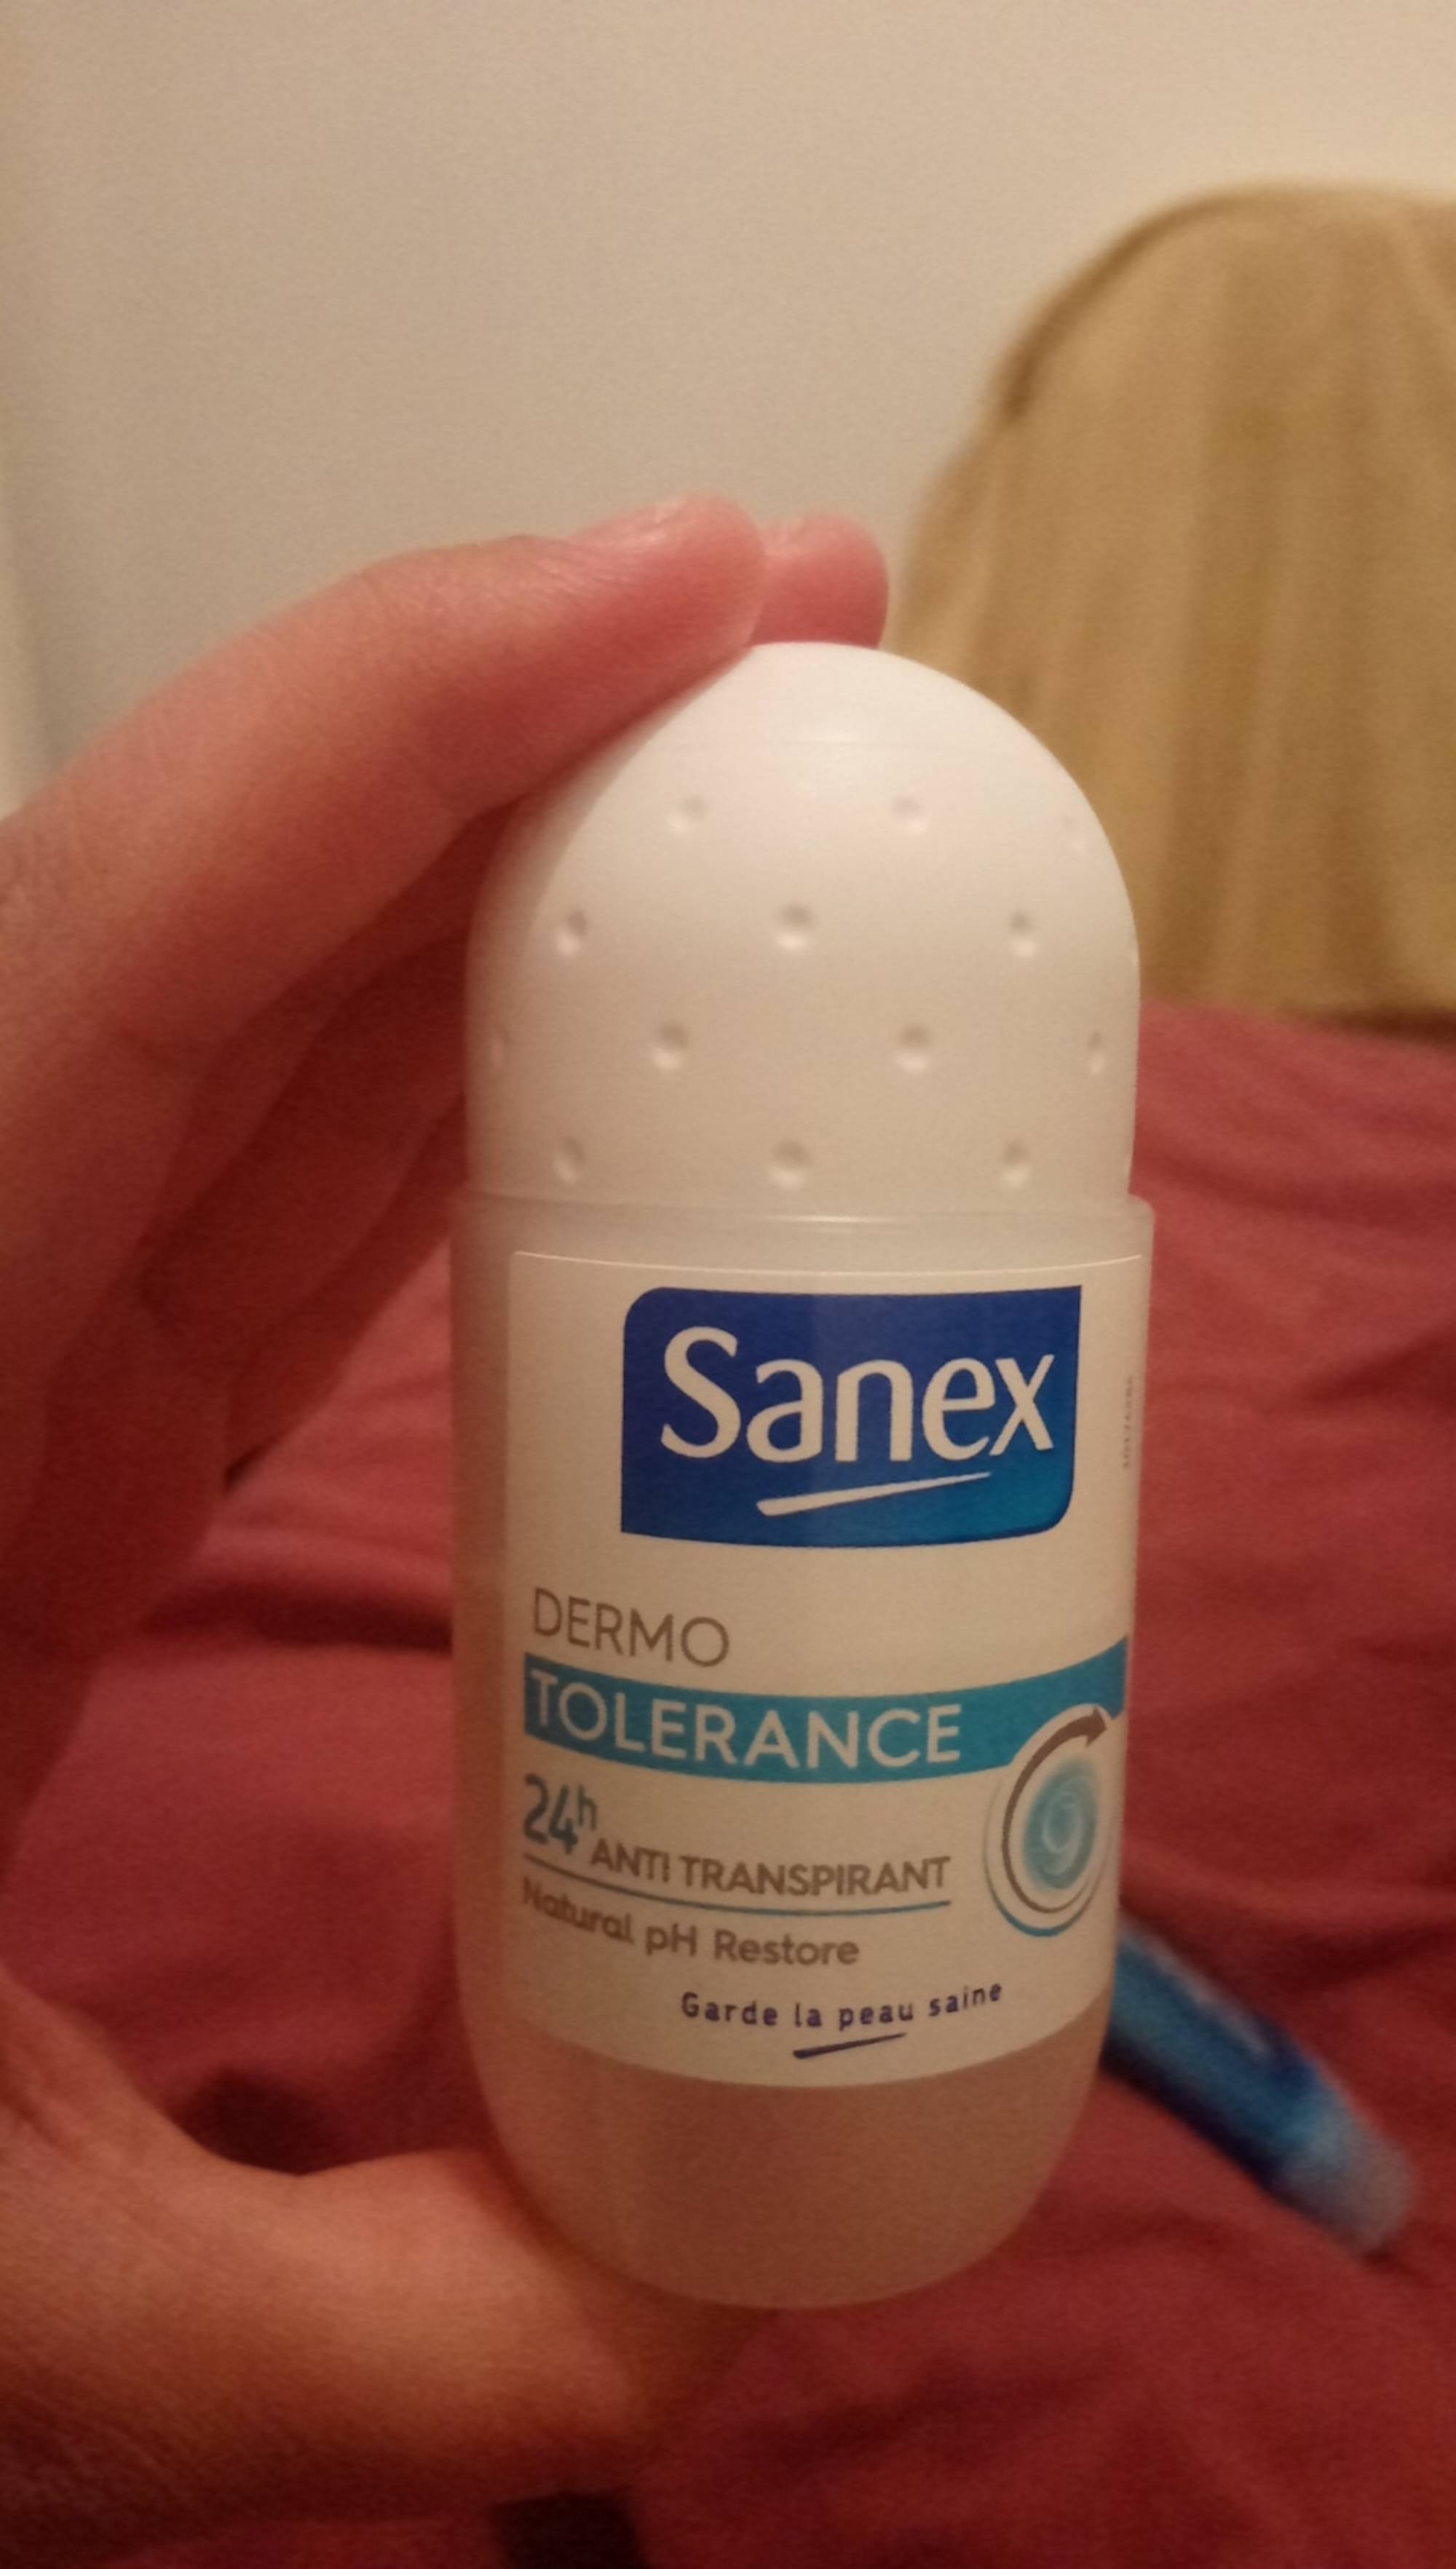 SANEX - Dermo tolerance - Anti-transpirant 24h